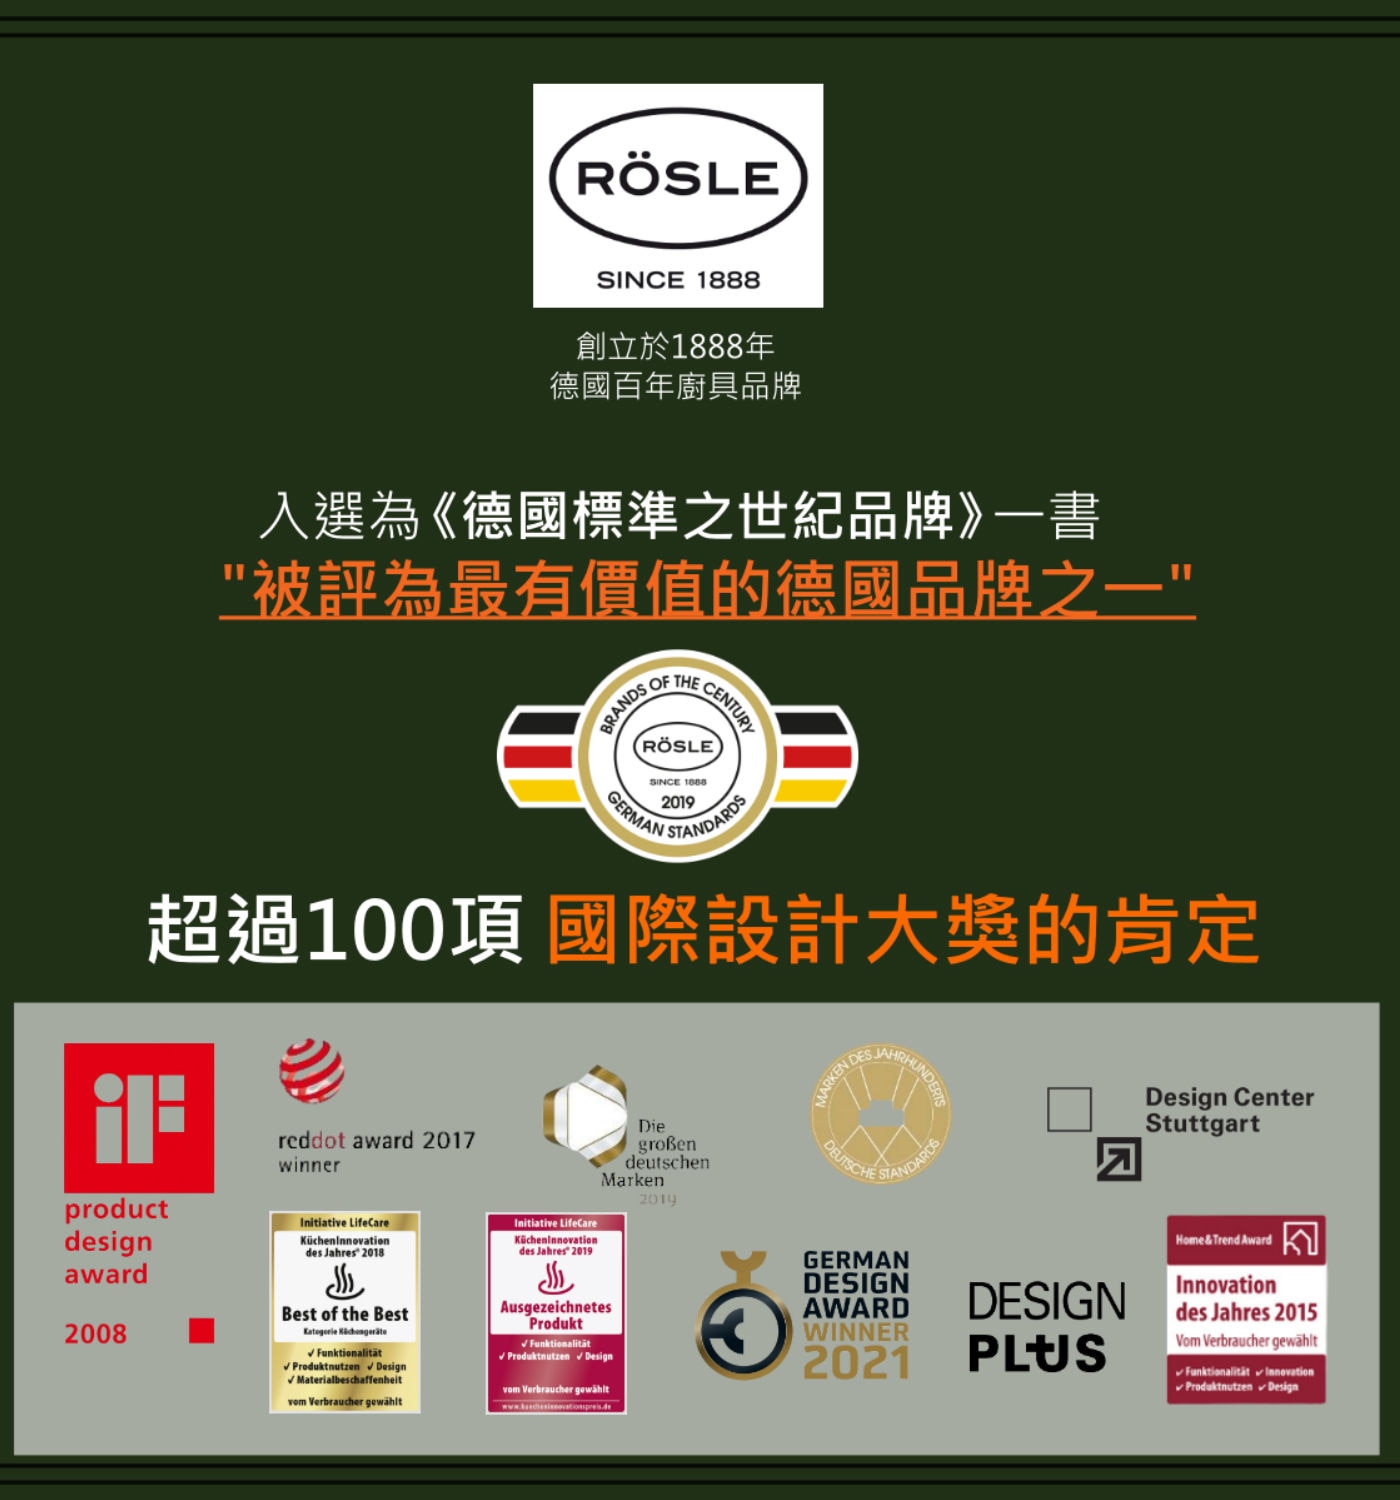 Rosle針式溫度計RÖSLE創立於1888年德國百年廚具品牌.入選為德國標準之世紀品牌一書被評為最有價值的德國品牌之一超過100項國際設計大獎的肯定